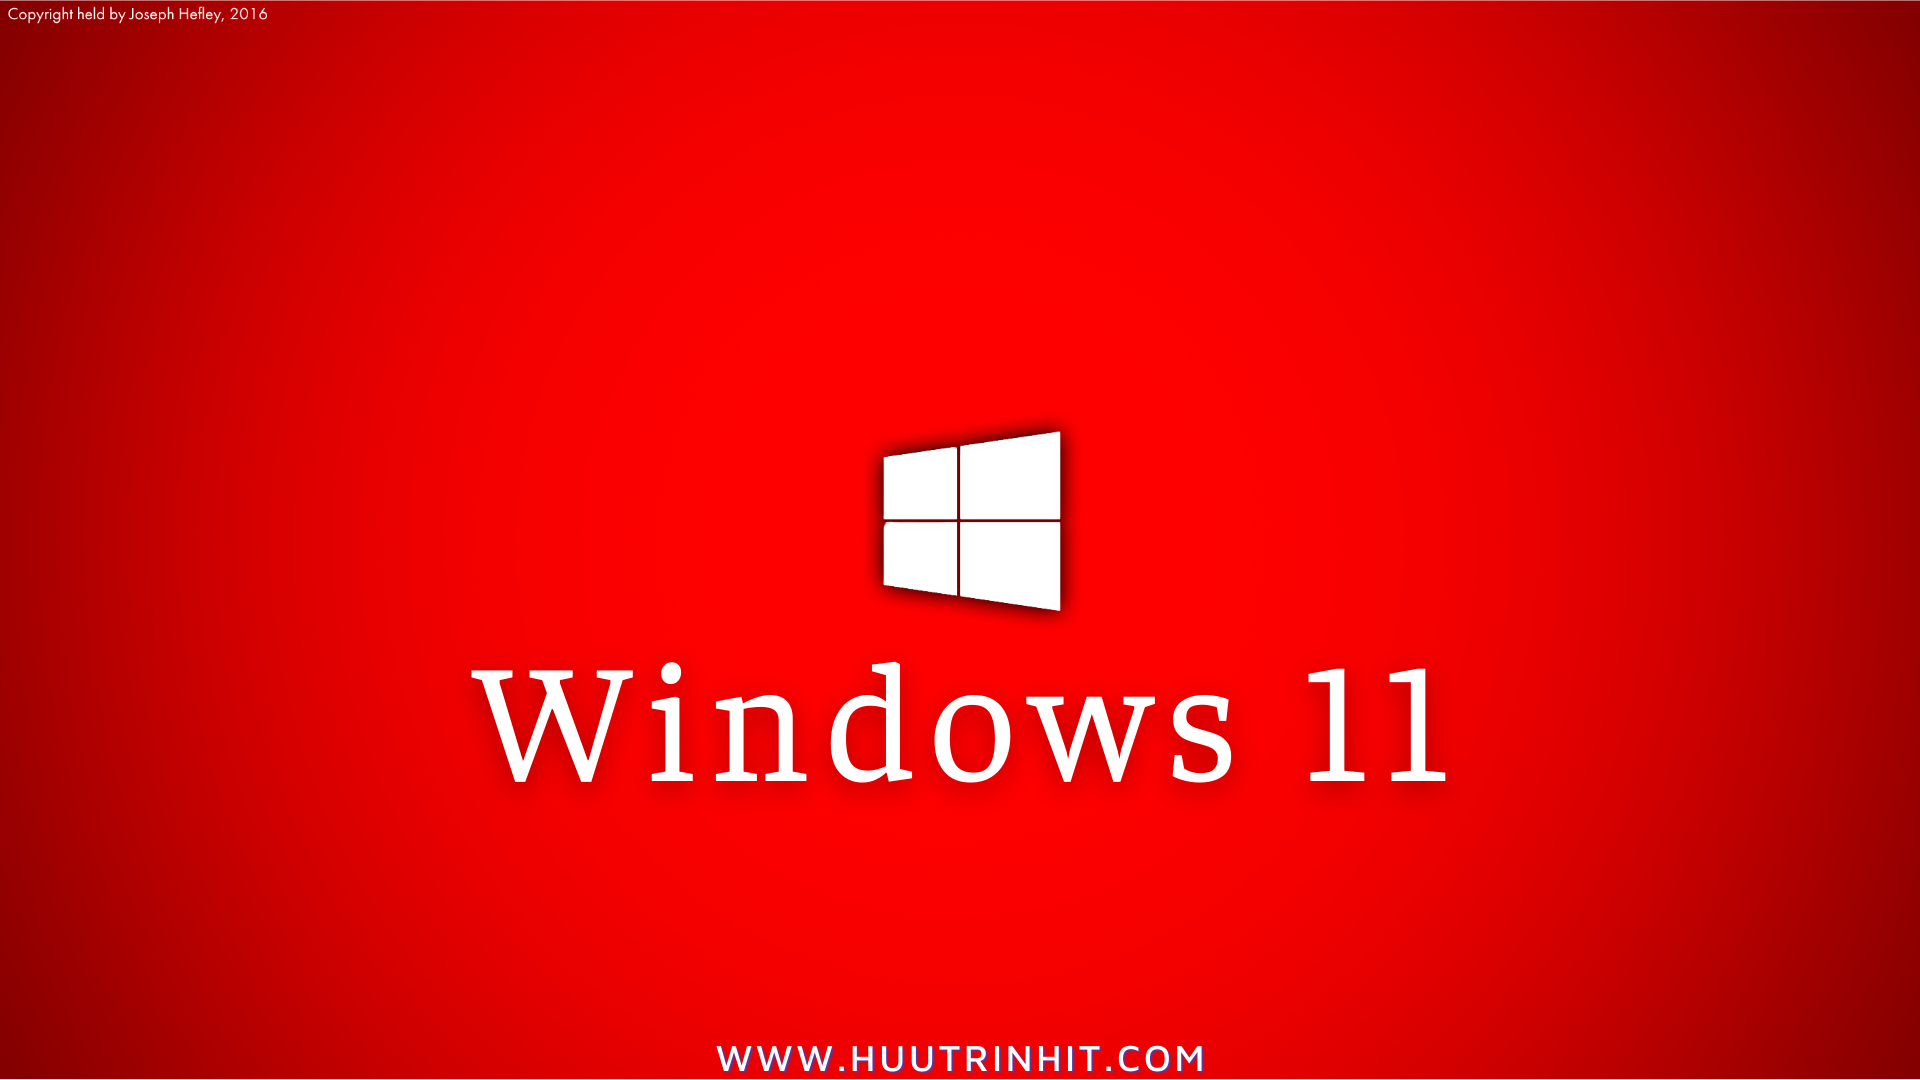 Download Windows 11 – Hướng dẫn tải và cài đặt Windows 11